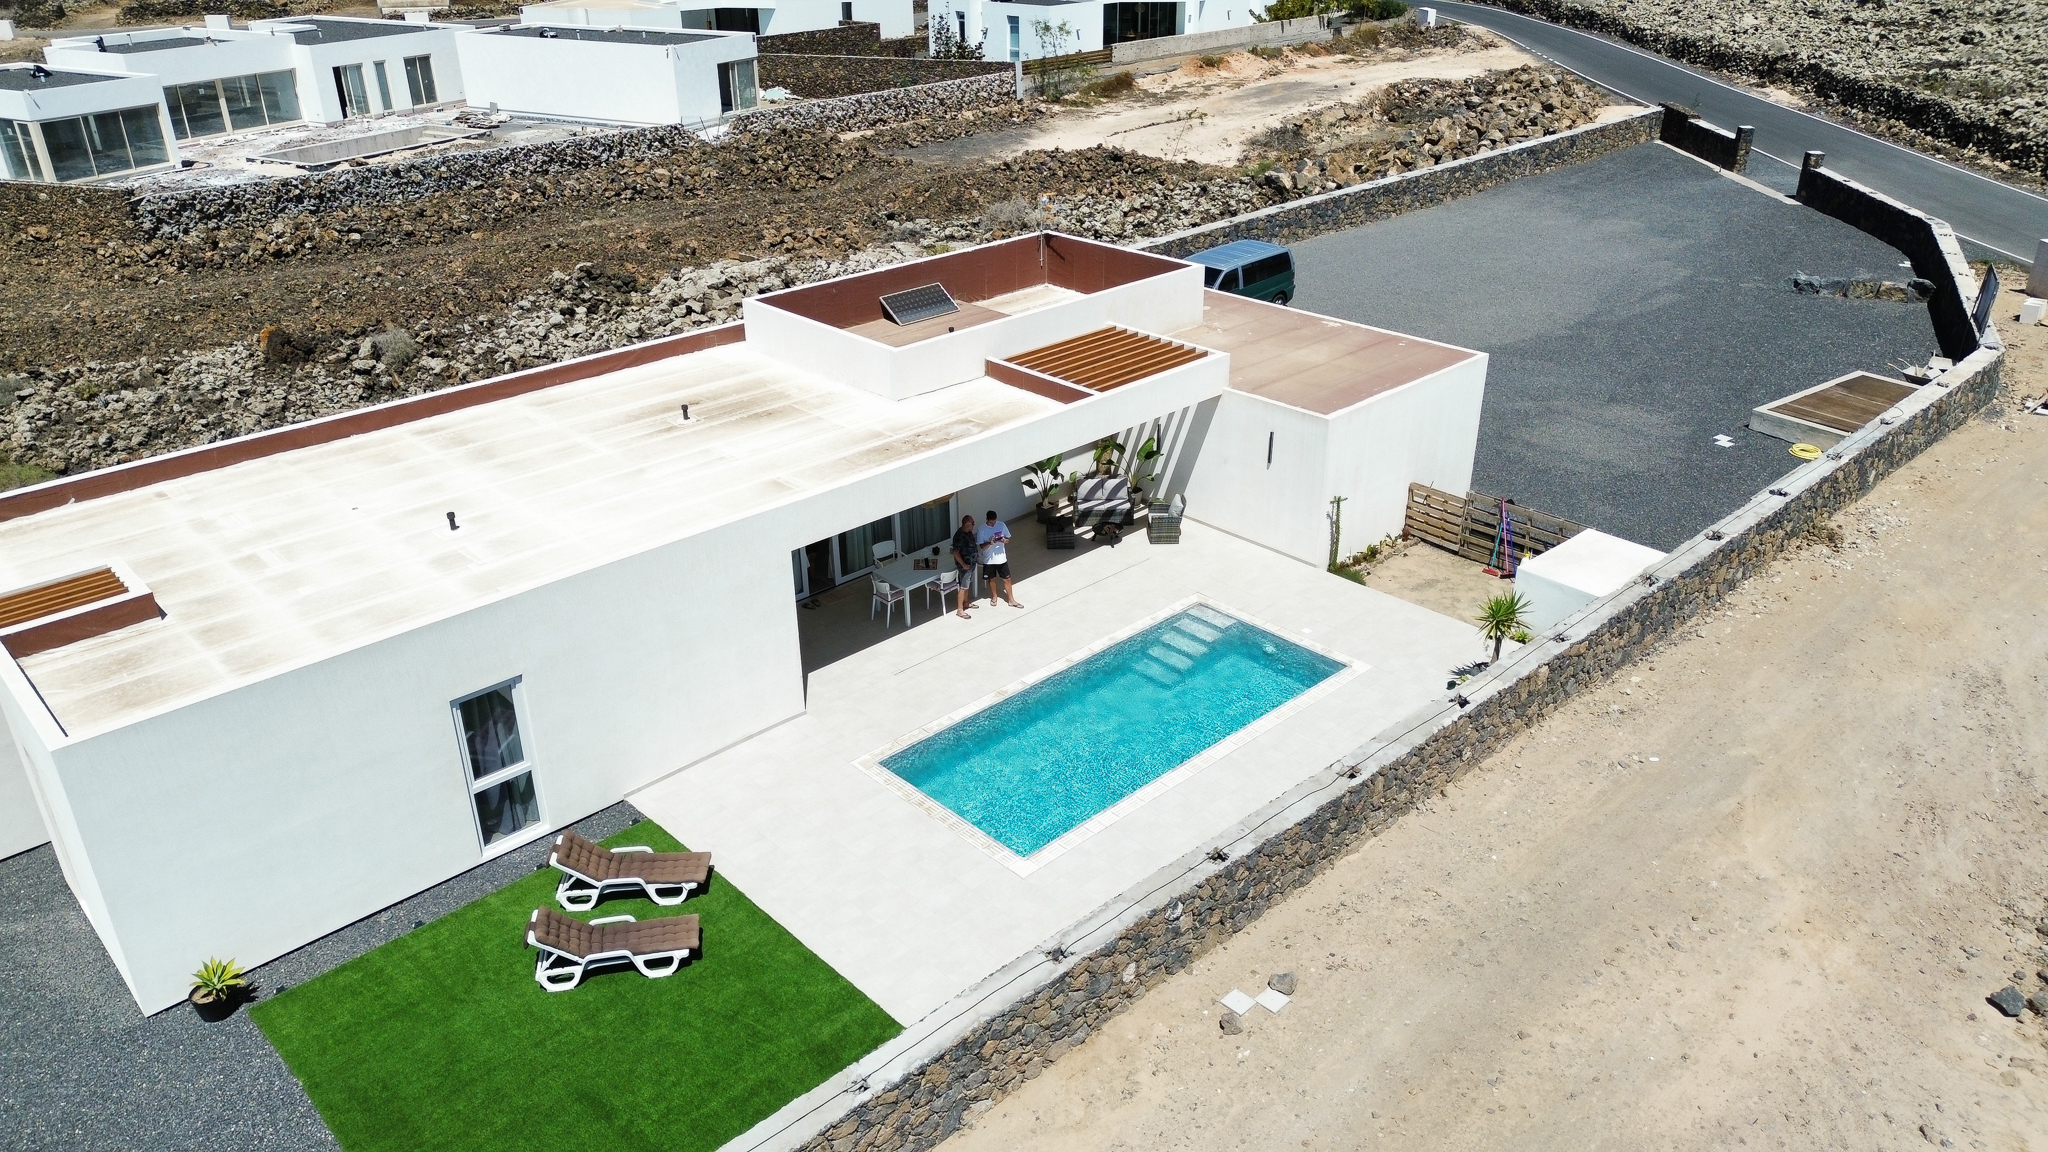 visto dal drone, facciata bioedilizia casa prefabbricata area piscina